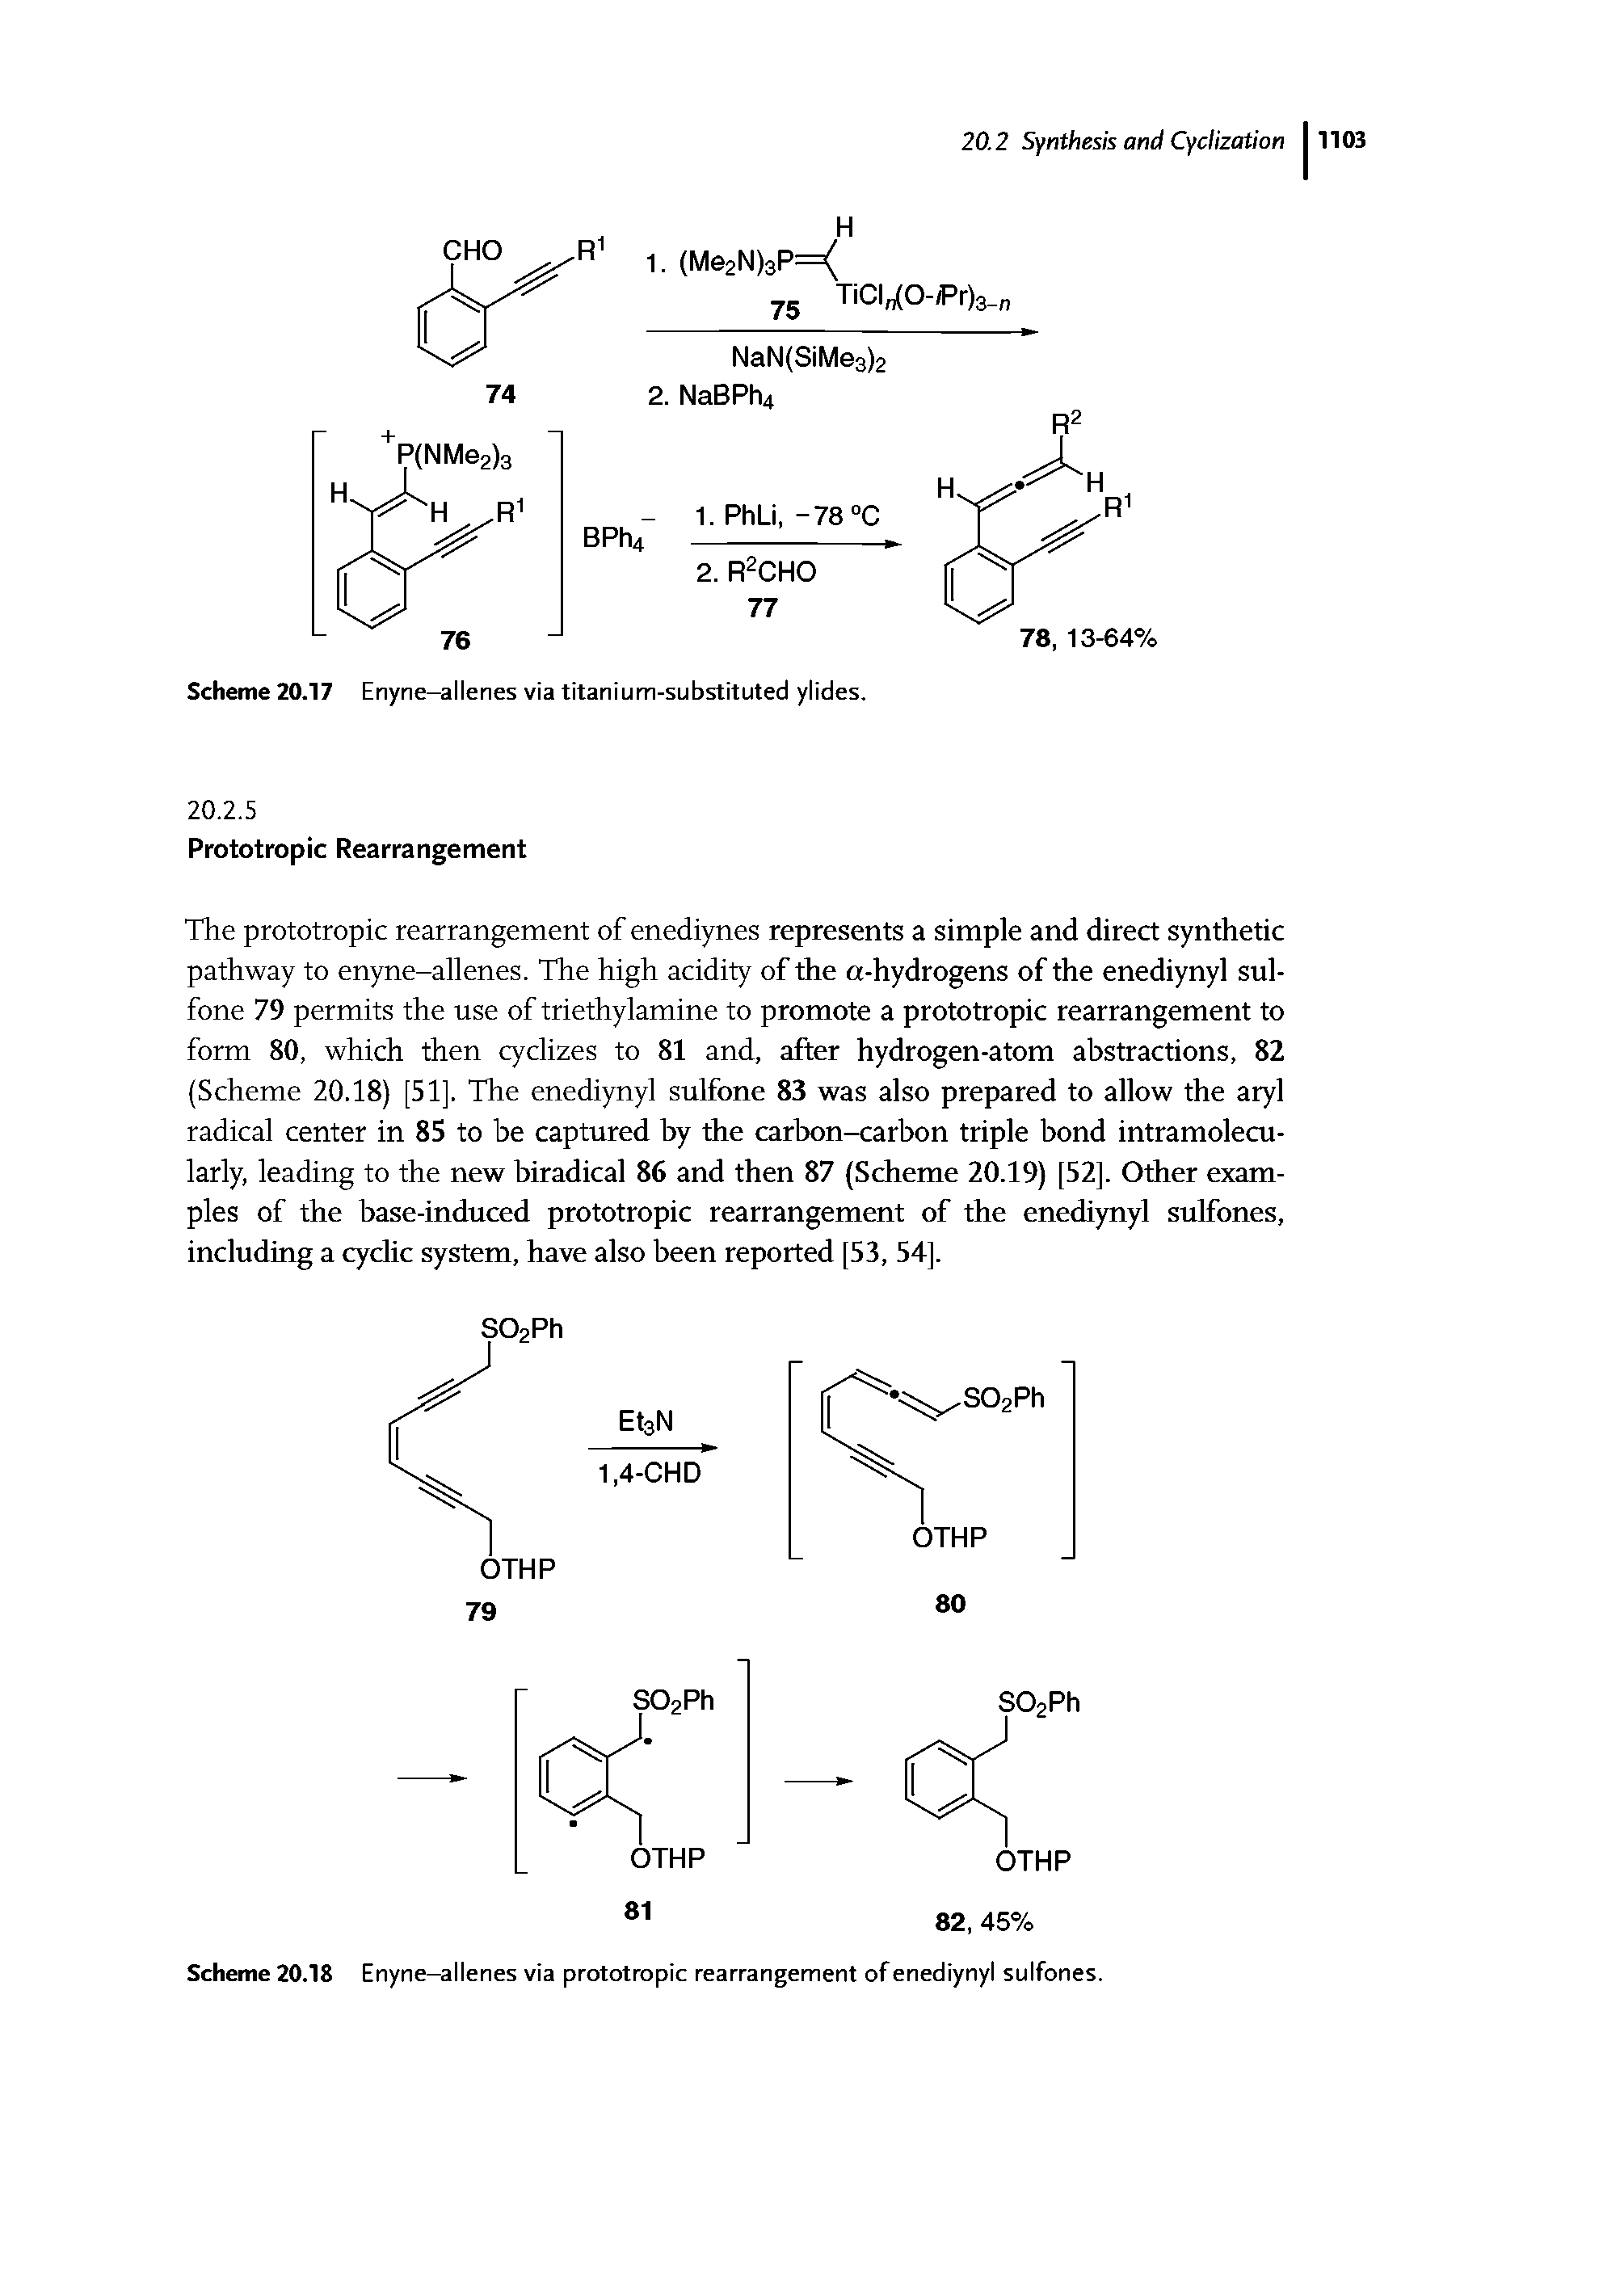 Scheme 20.18 Enyne-allenes via prototropic rearrangement of enediynyl sulfones.